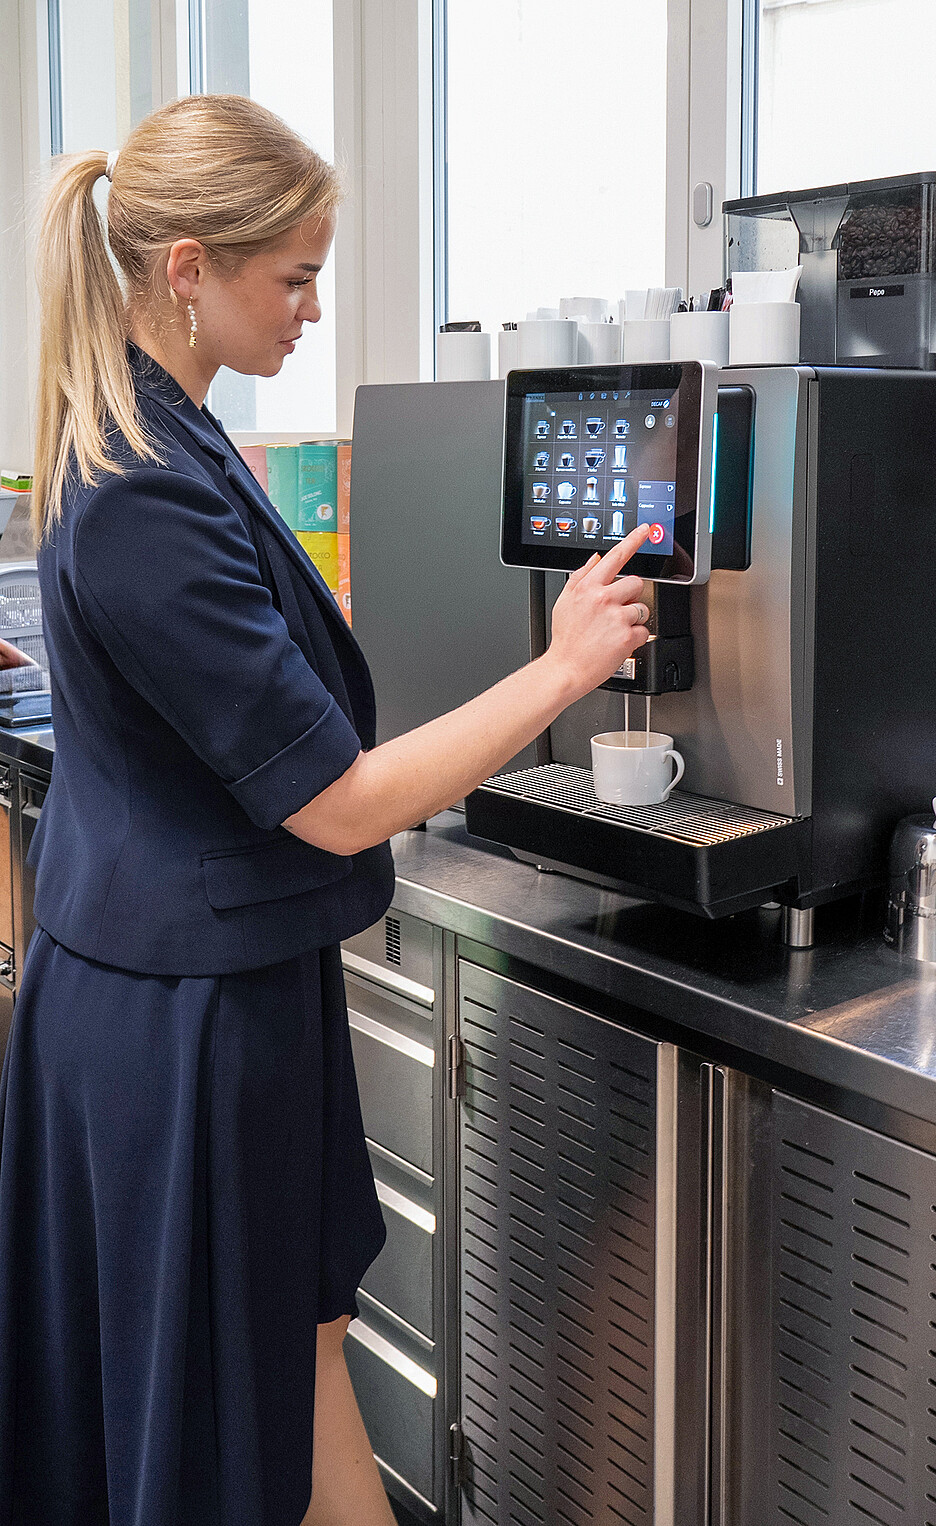 Conçue pour les gros volumes, la machine à café Franke A800 offre une qualité, une diversité et une performance sans compromis grâce à son système à trois chauffe-eaux et à son concept de commande intuitif.